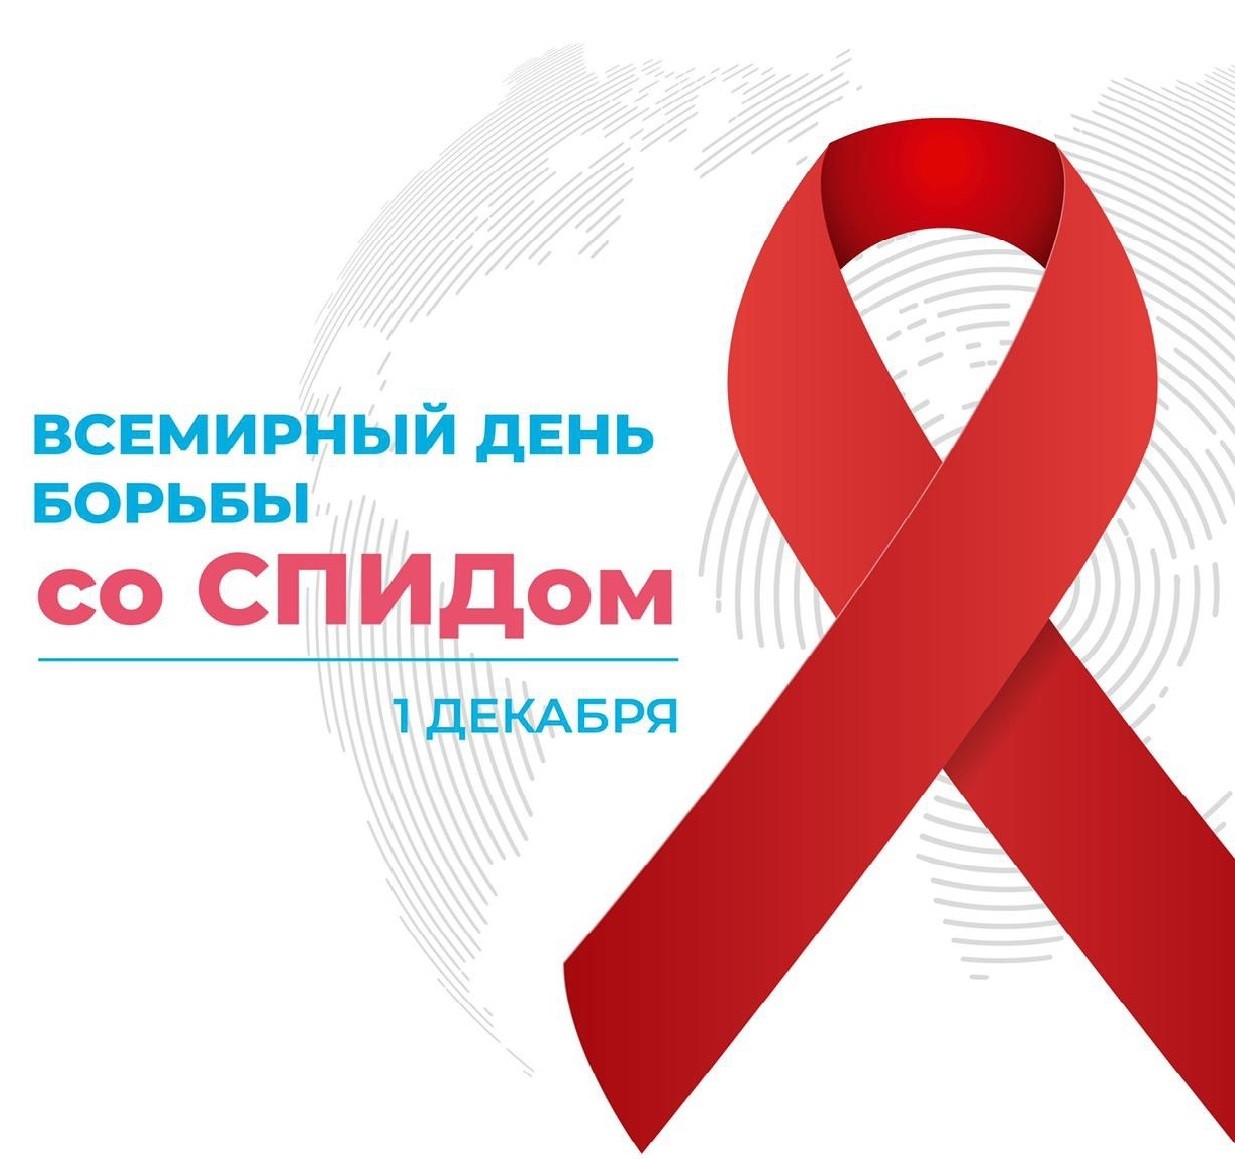 28.11.-04.12.2022 — неделя мероприятий,  посвященных Всемирному дню борьбы со СПИДом 1 декабря!